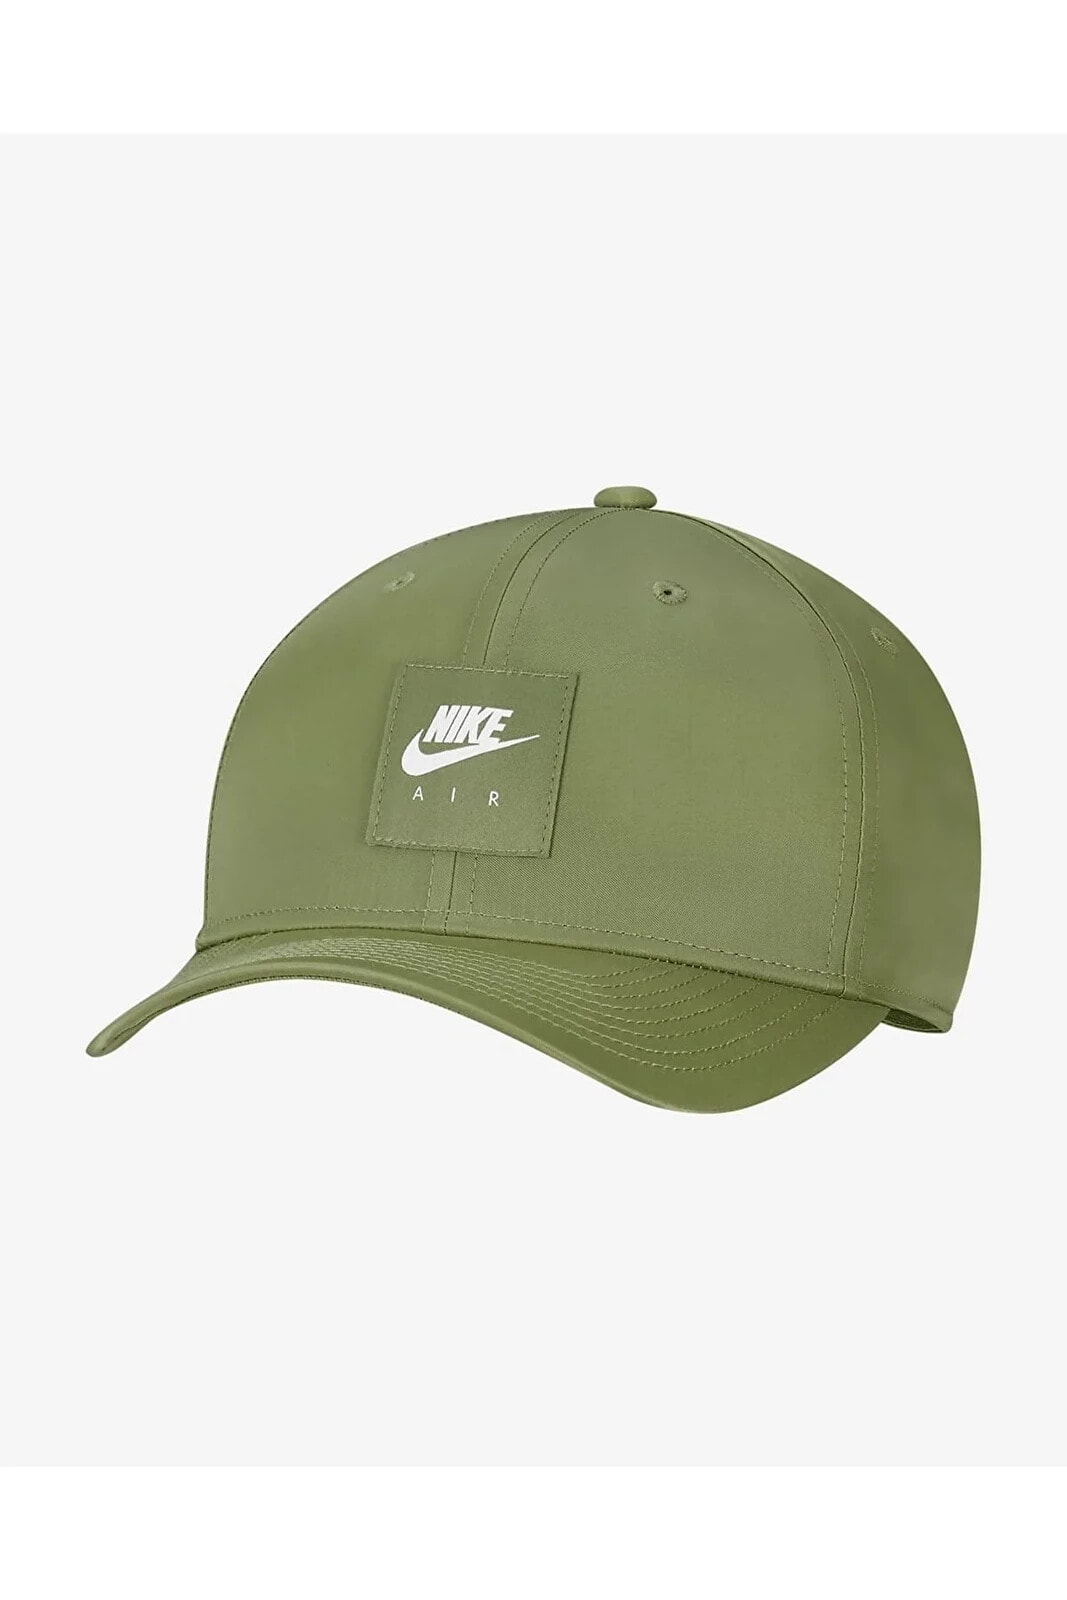 Air Classic 99 Yeşil Unisex Şapka Kadın Şapka Erkek Şapka Dh2423-344